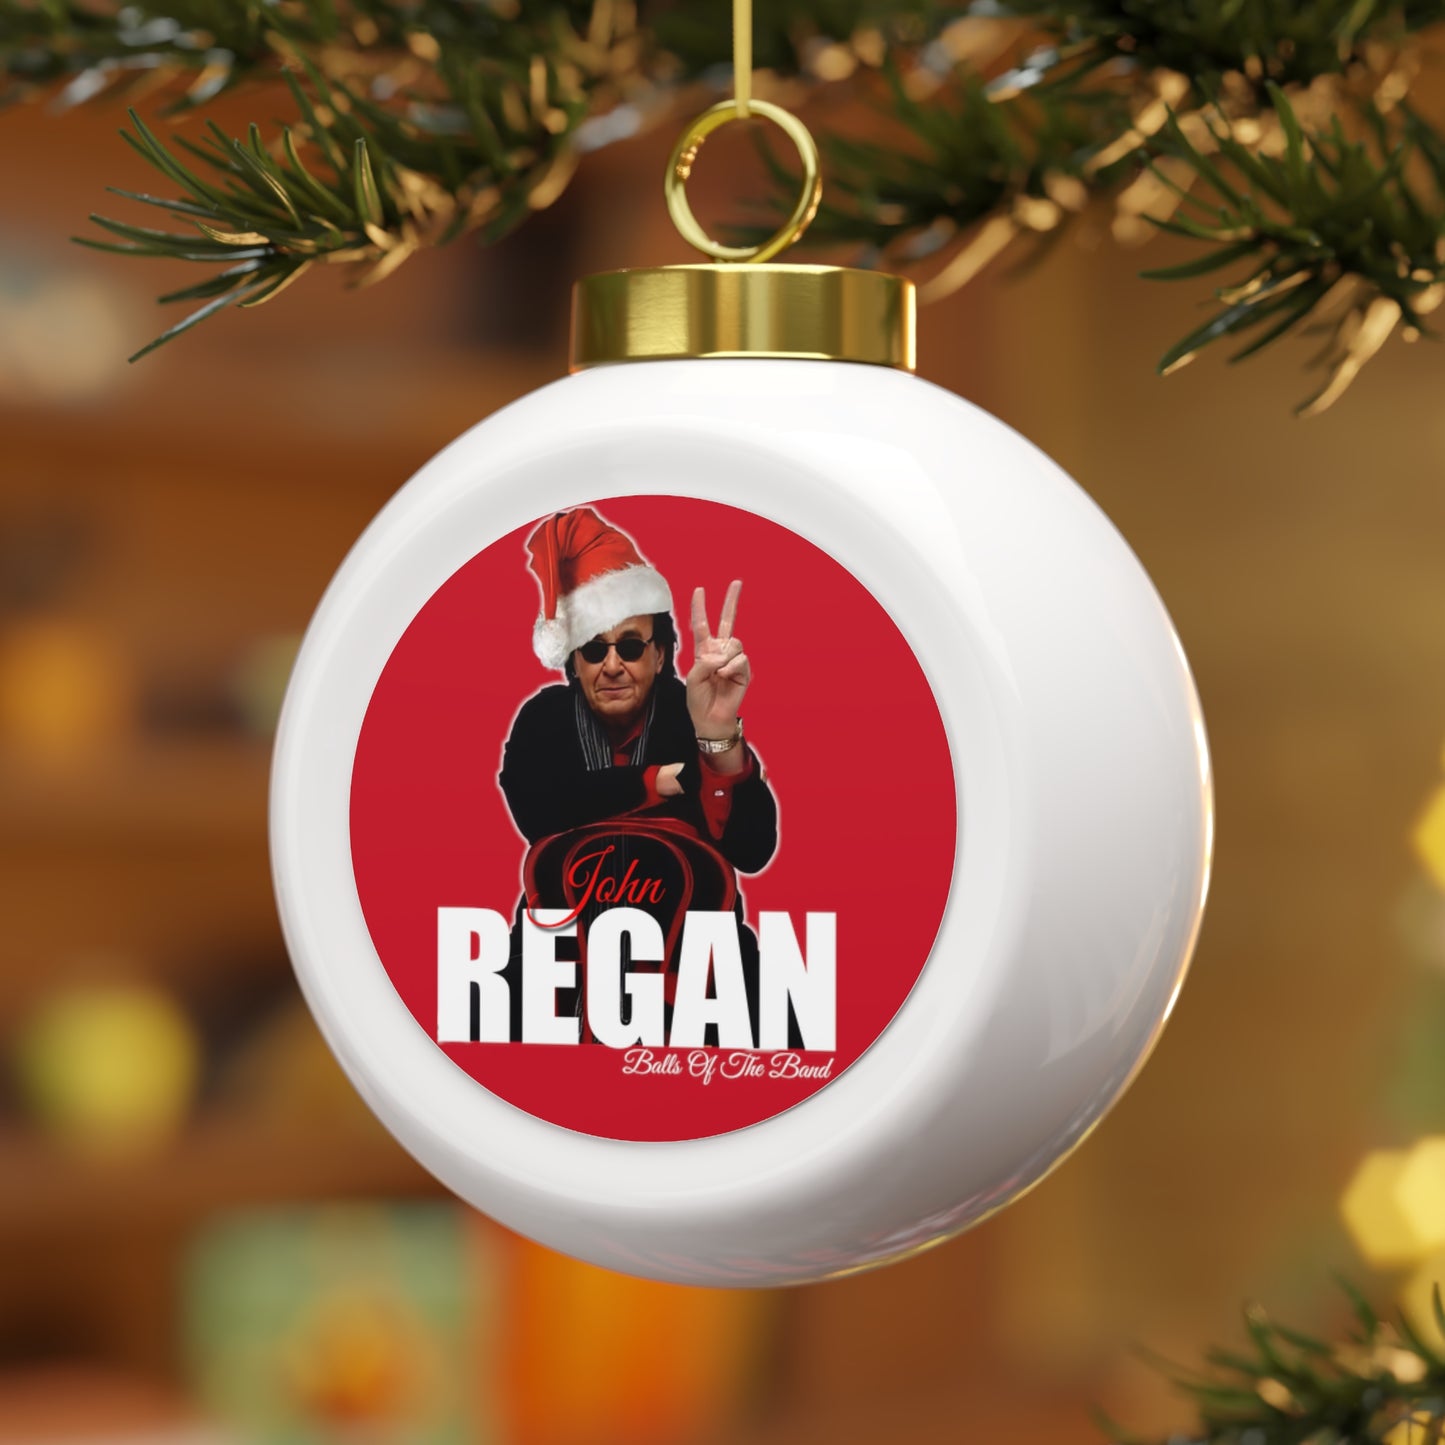 John Regan Christmas Ball Ornament #1